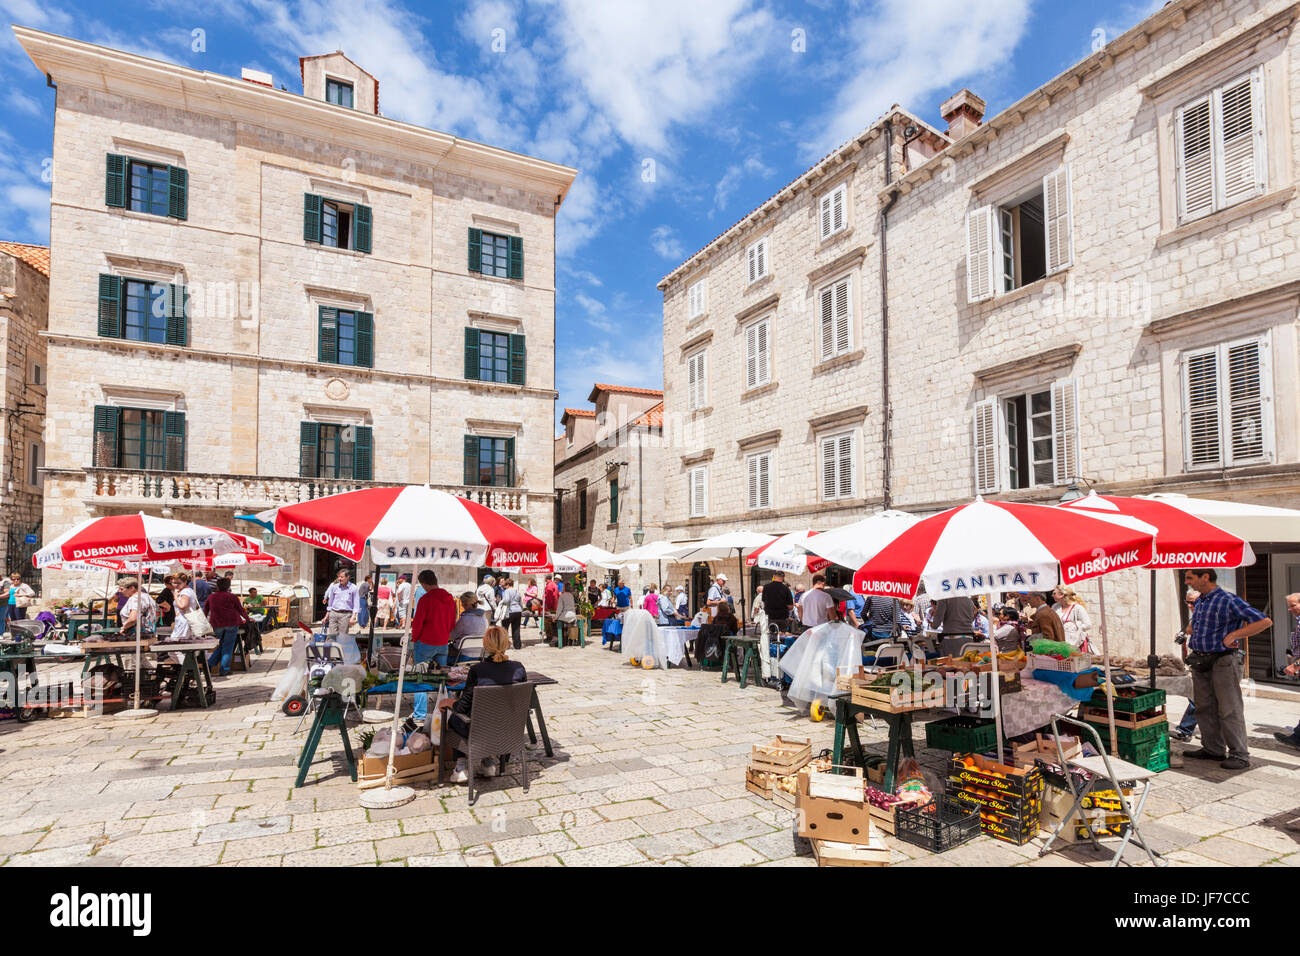 Dubrovnik Croatie côte dalmate, Marché des artisans et des marchands de souvenirs, d'open market place Gundulic Dubrovnik Old Town, Dubrovnik, Croatie côte dalmate Banque D'Images